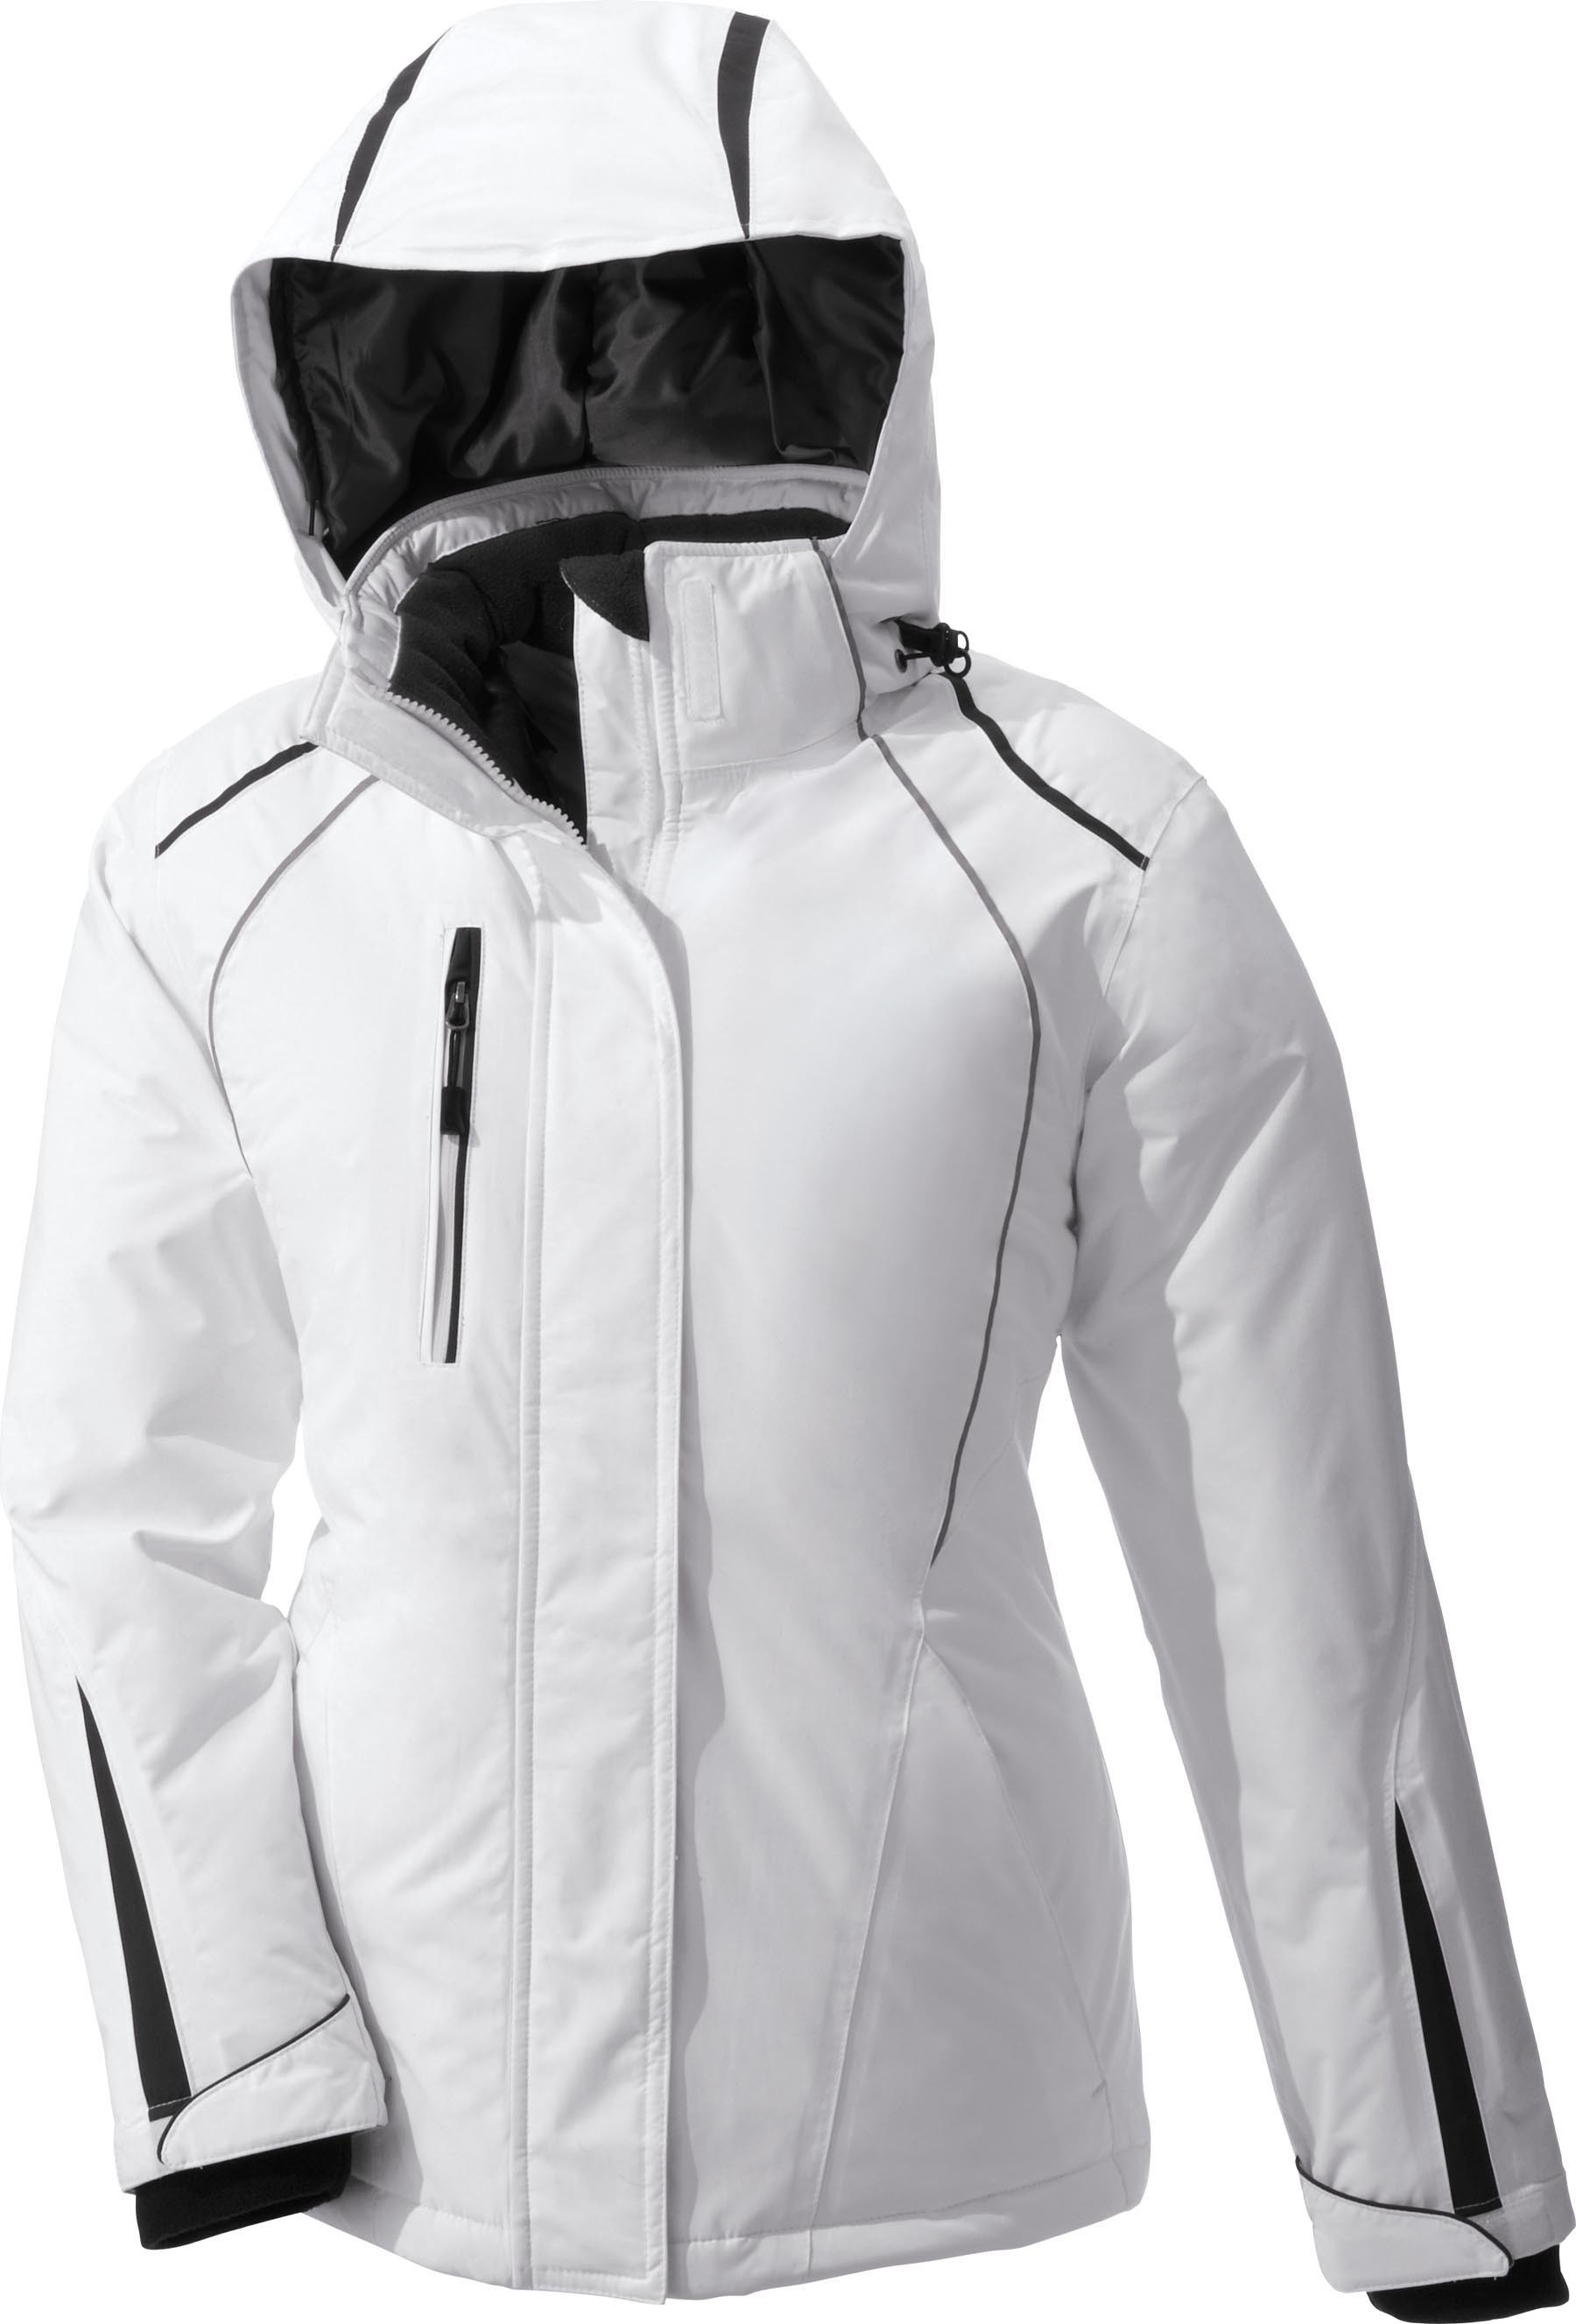 Ash City UTK 3 Warm.Logik 78652 - Altitude Ladies' Seam-Sealed Insulated Jacket